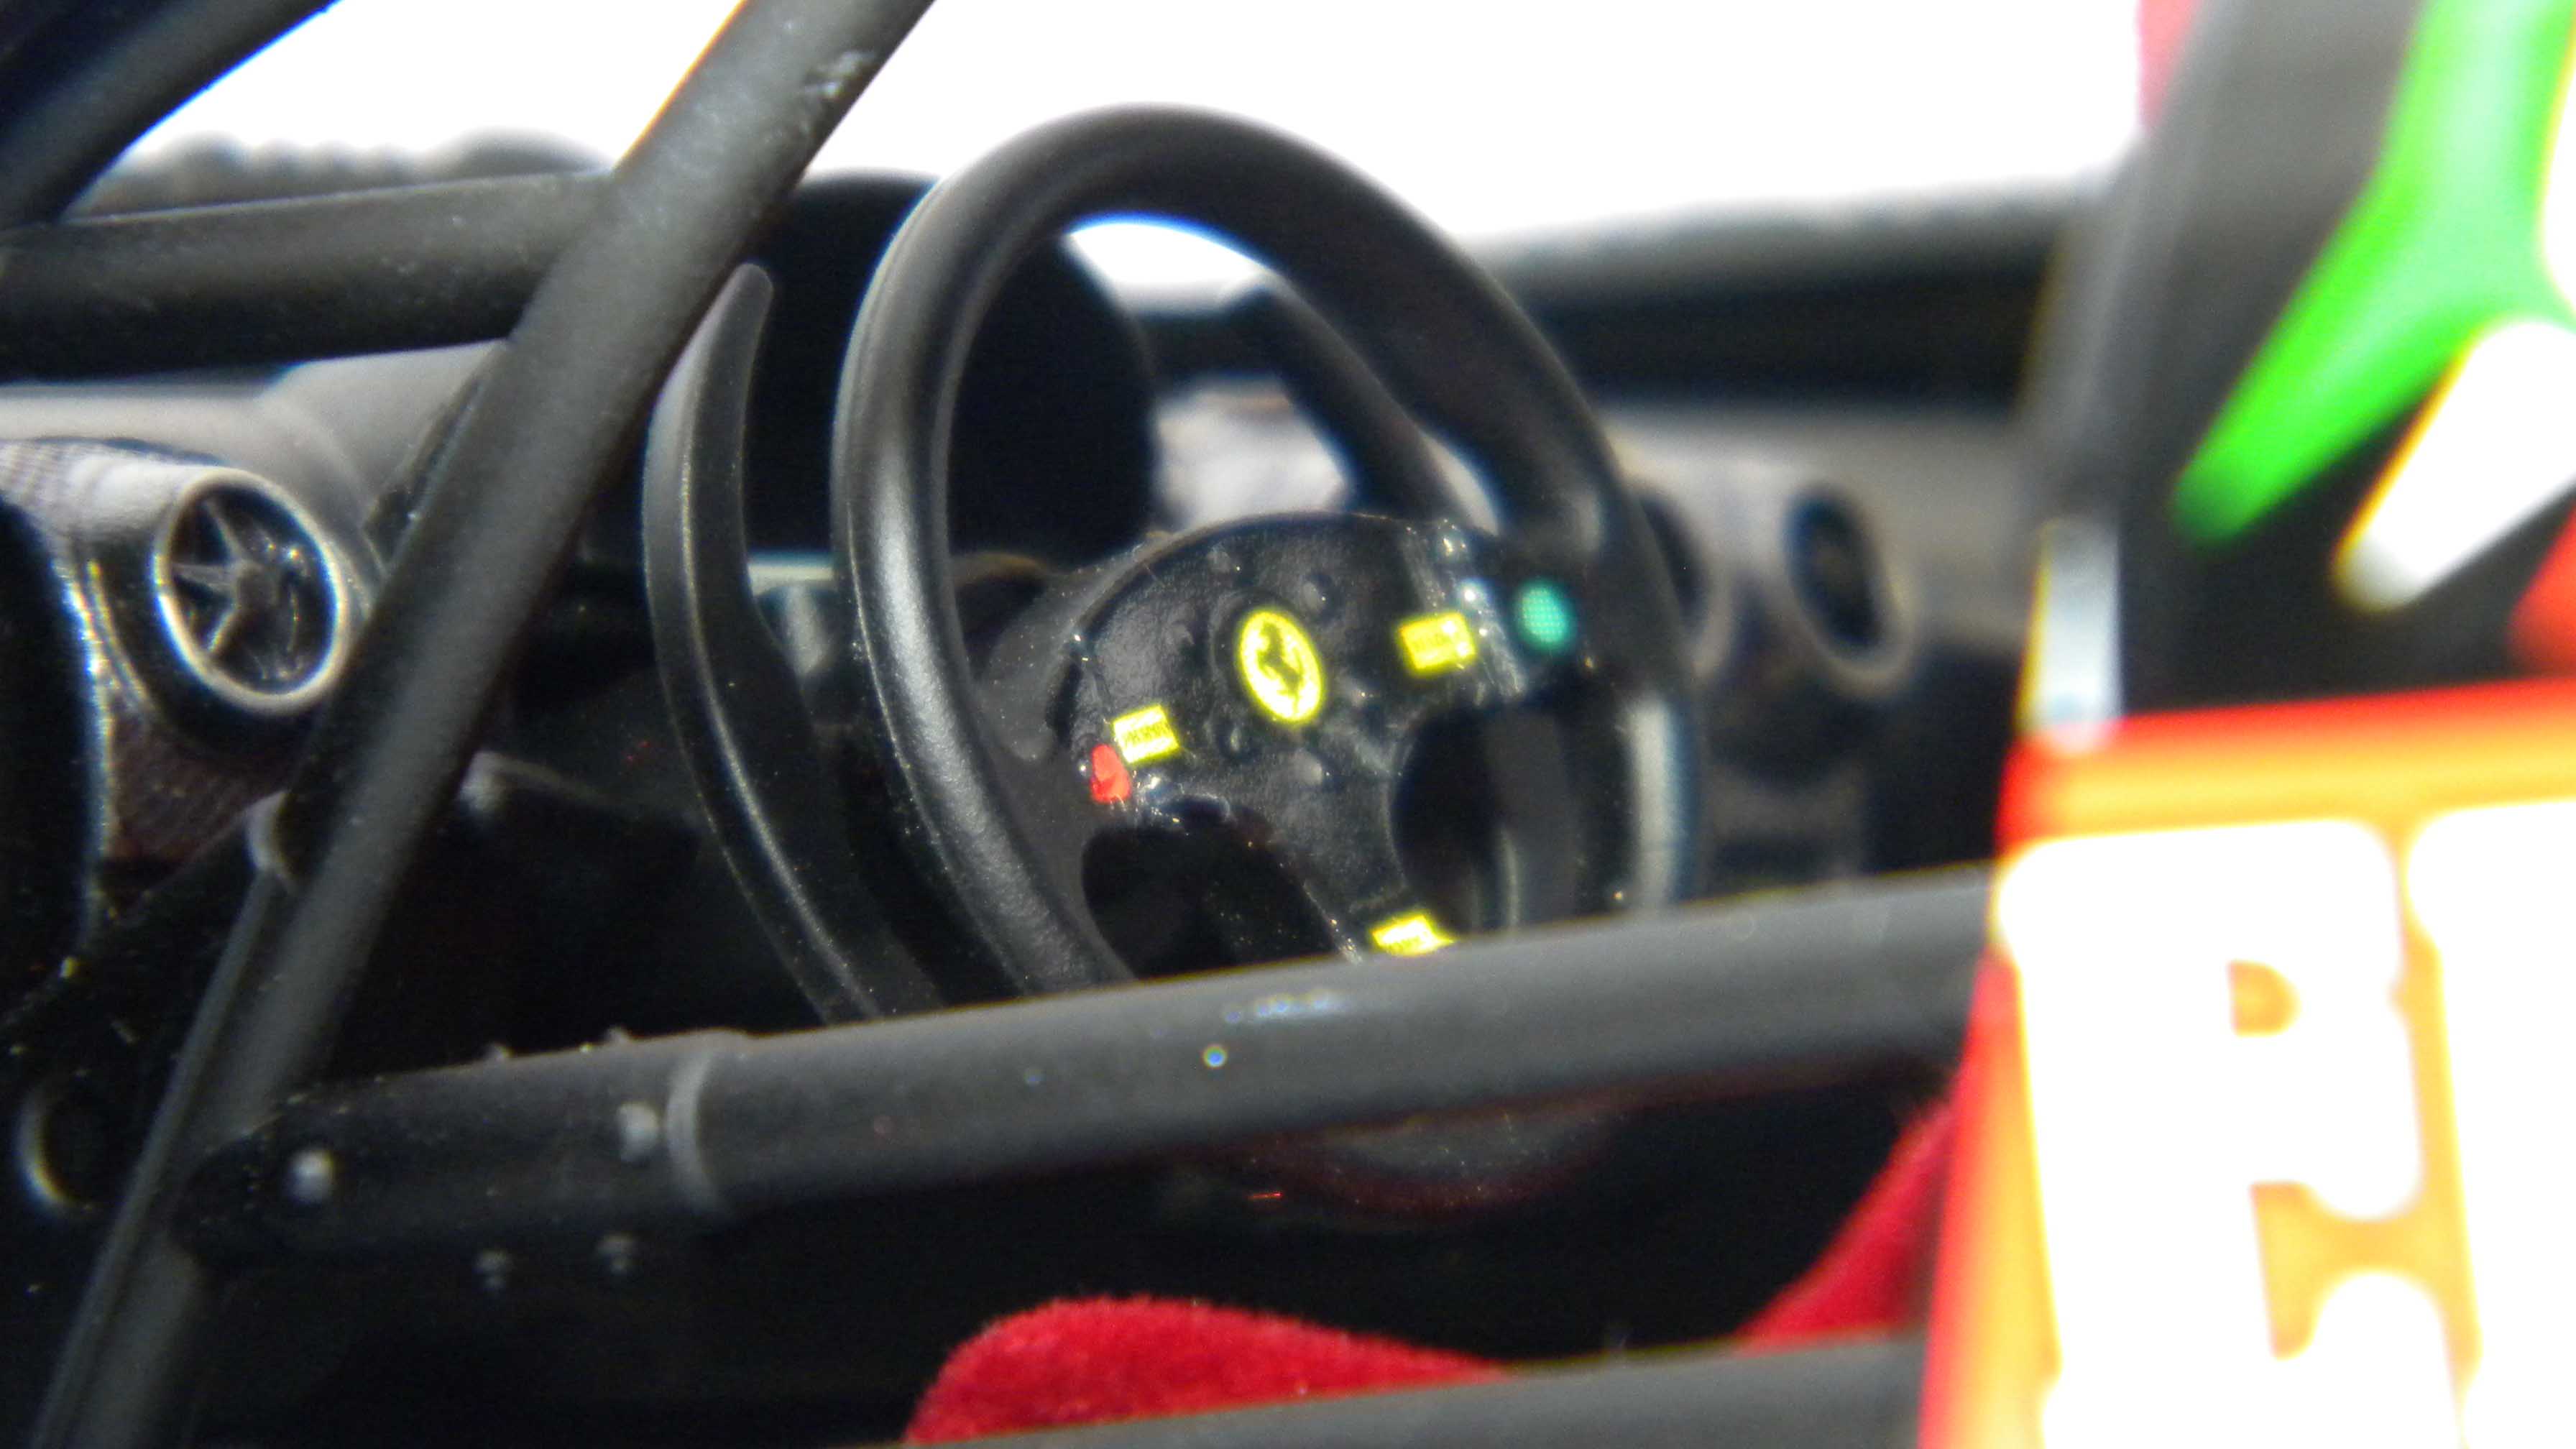 Ferrari 430 (valleverde